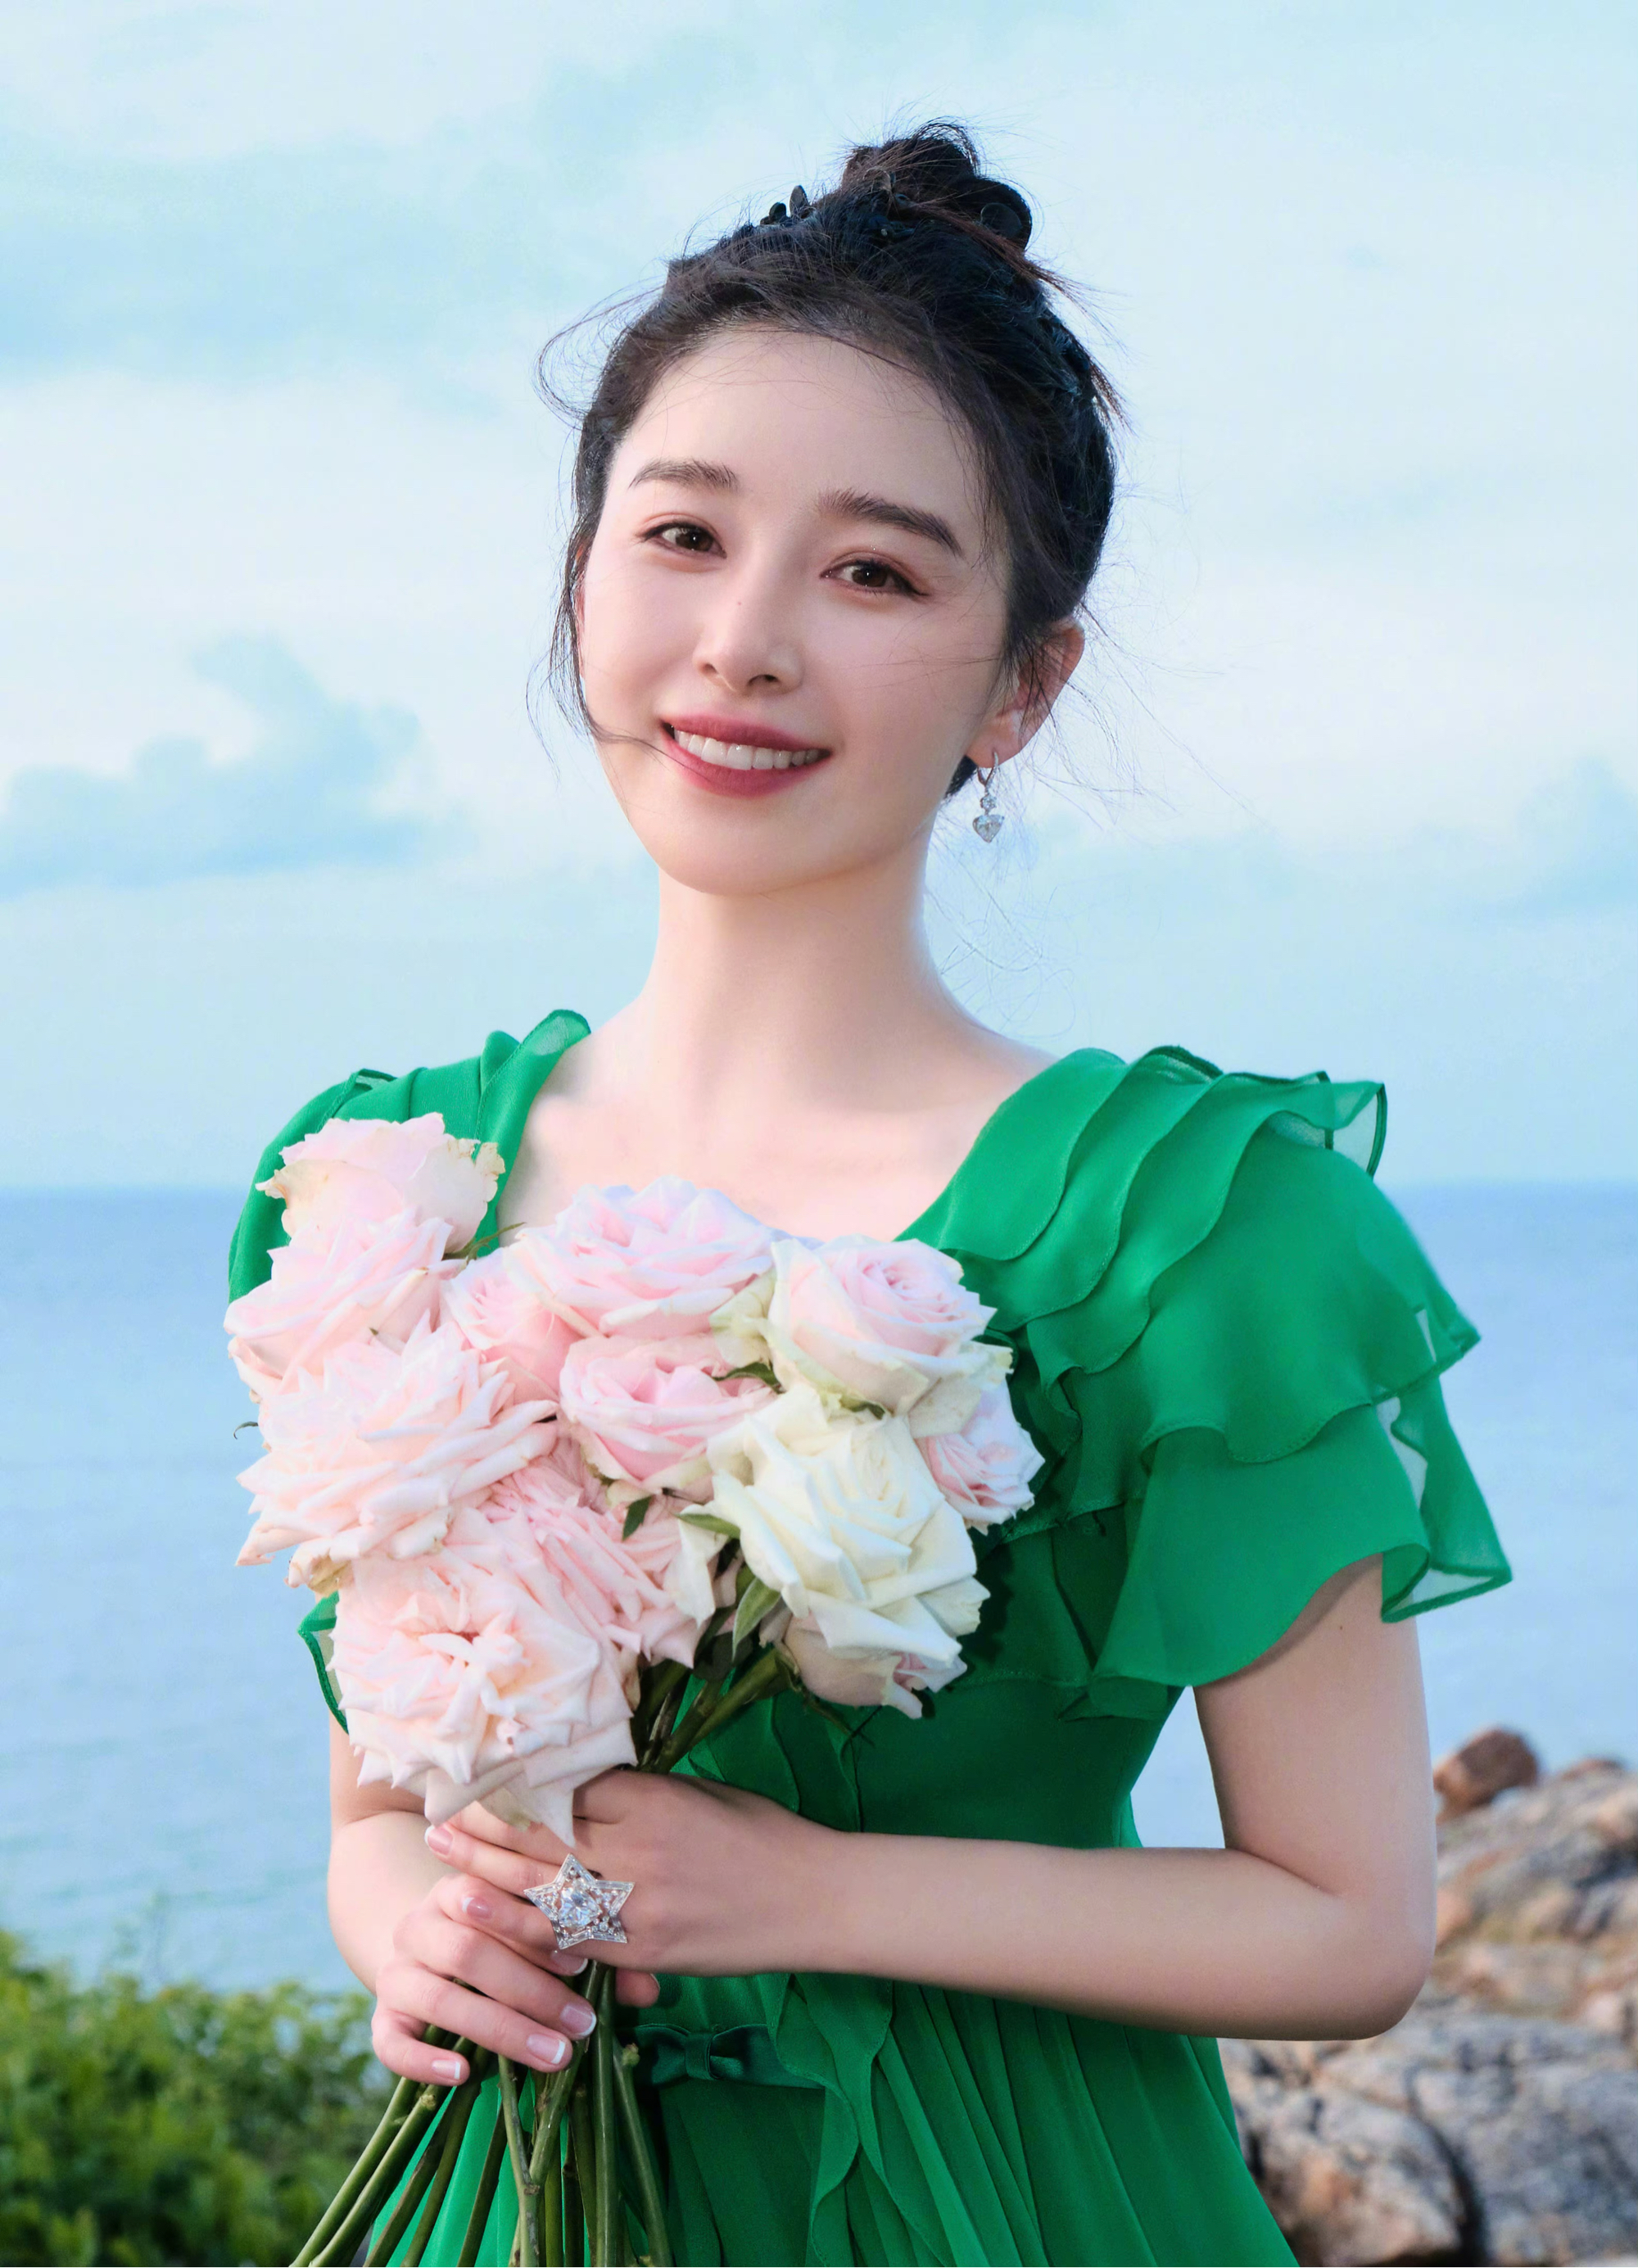 阚清子回应被男友求婚一事:谢谢大家并晒出美照,照片中她身穿绿色